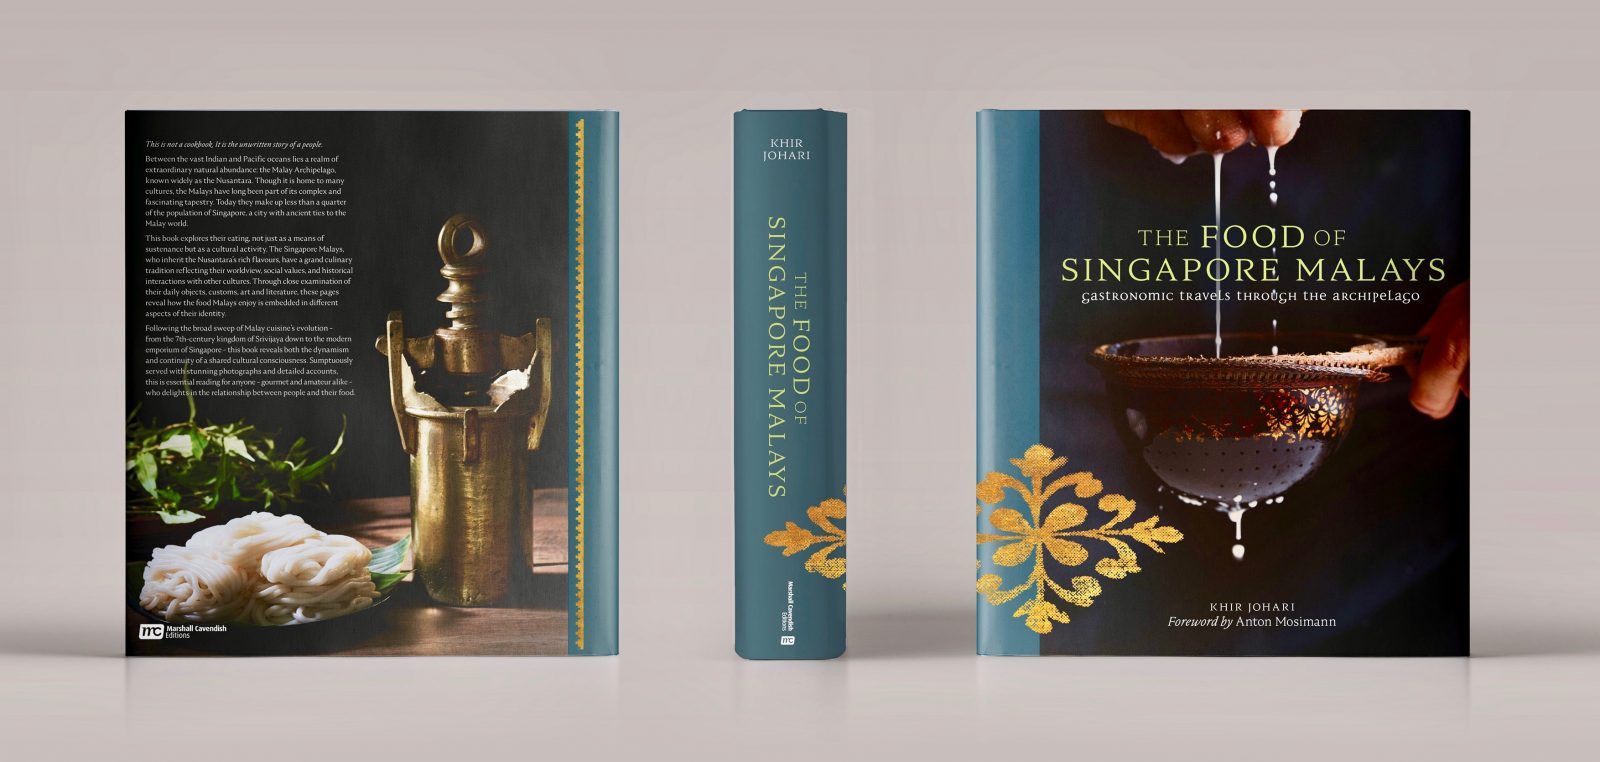 Khir Johari details Nusantara cooking in his book, The Food of the Singapore Malays